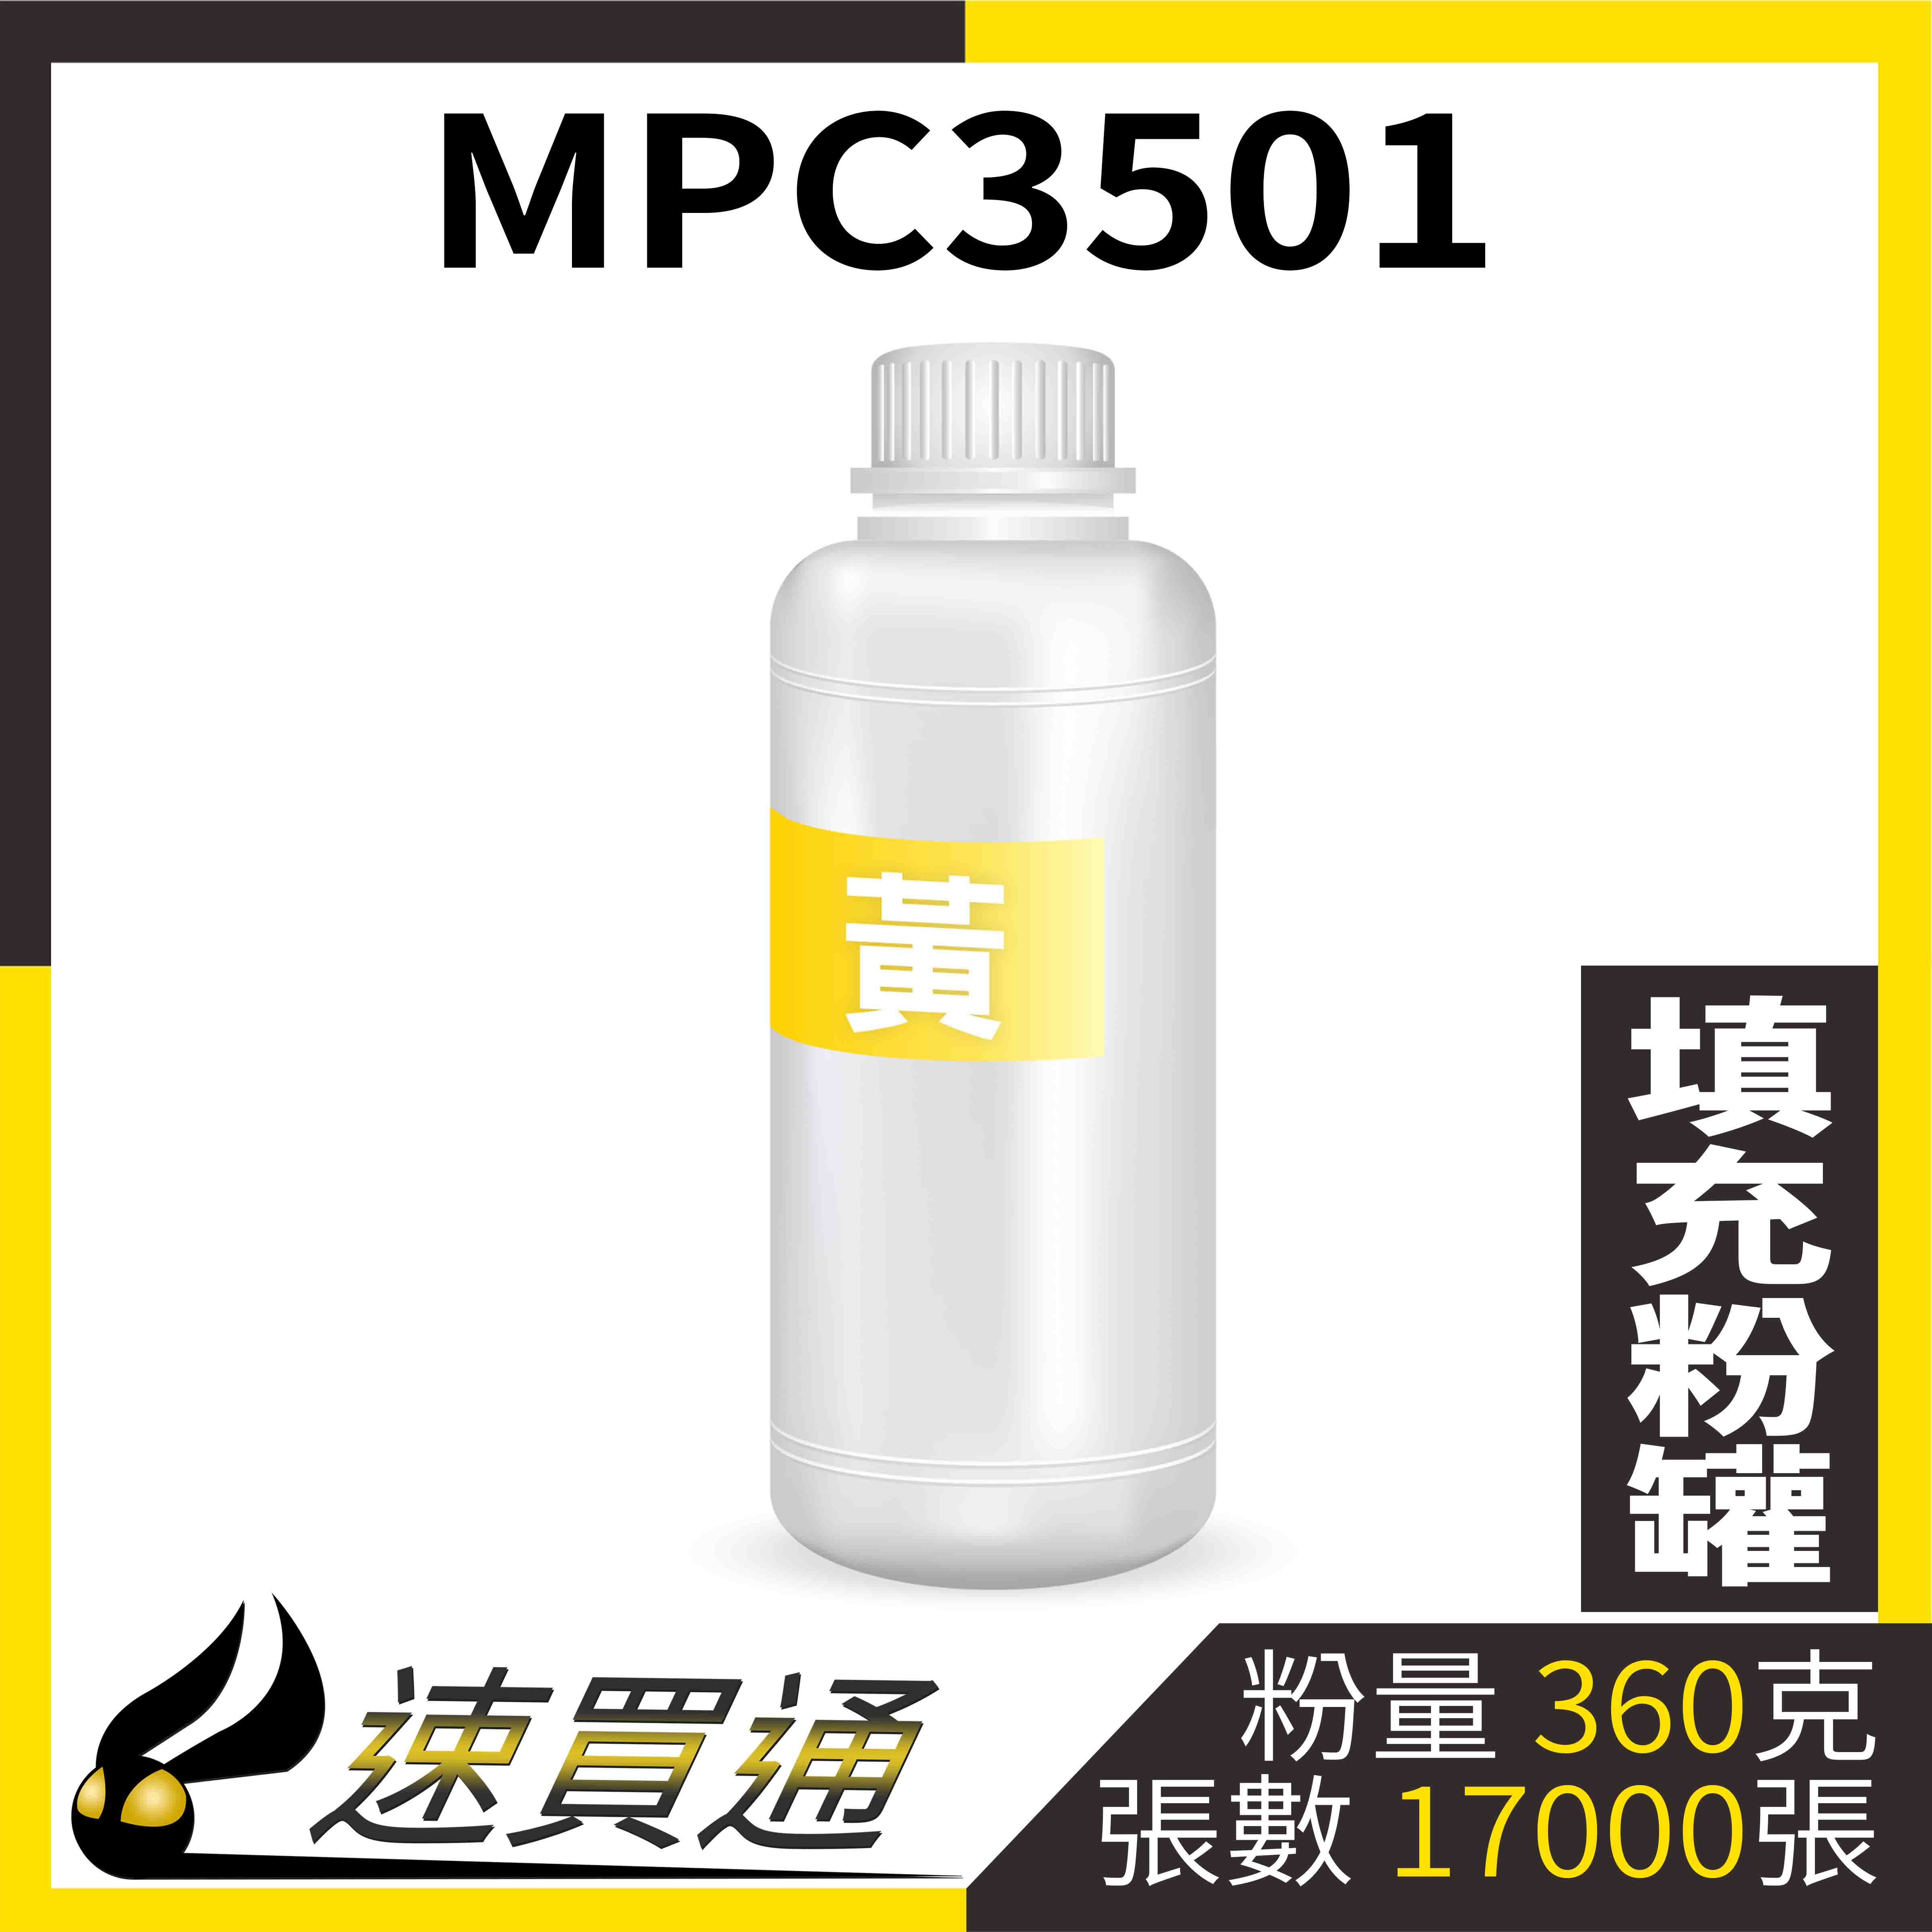 【速買通】RICOH MPC3501 黃 填充式碳粉罐